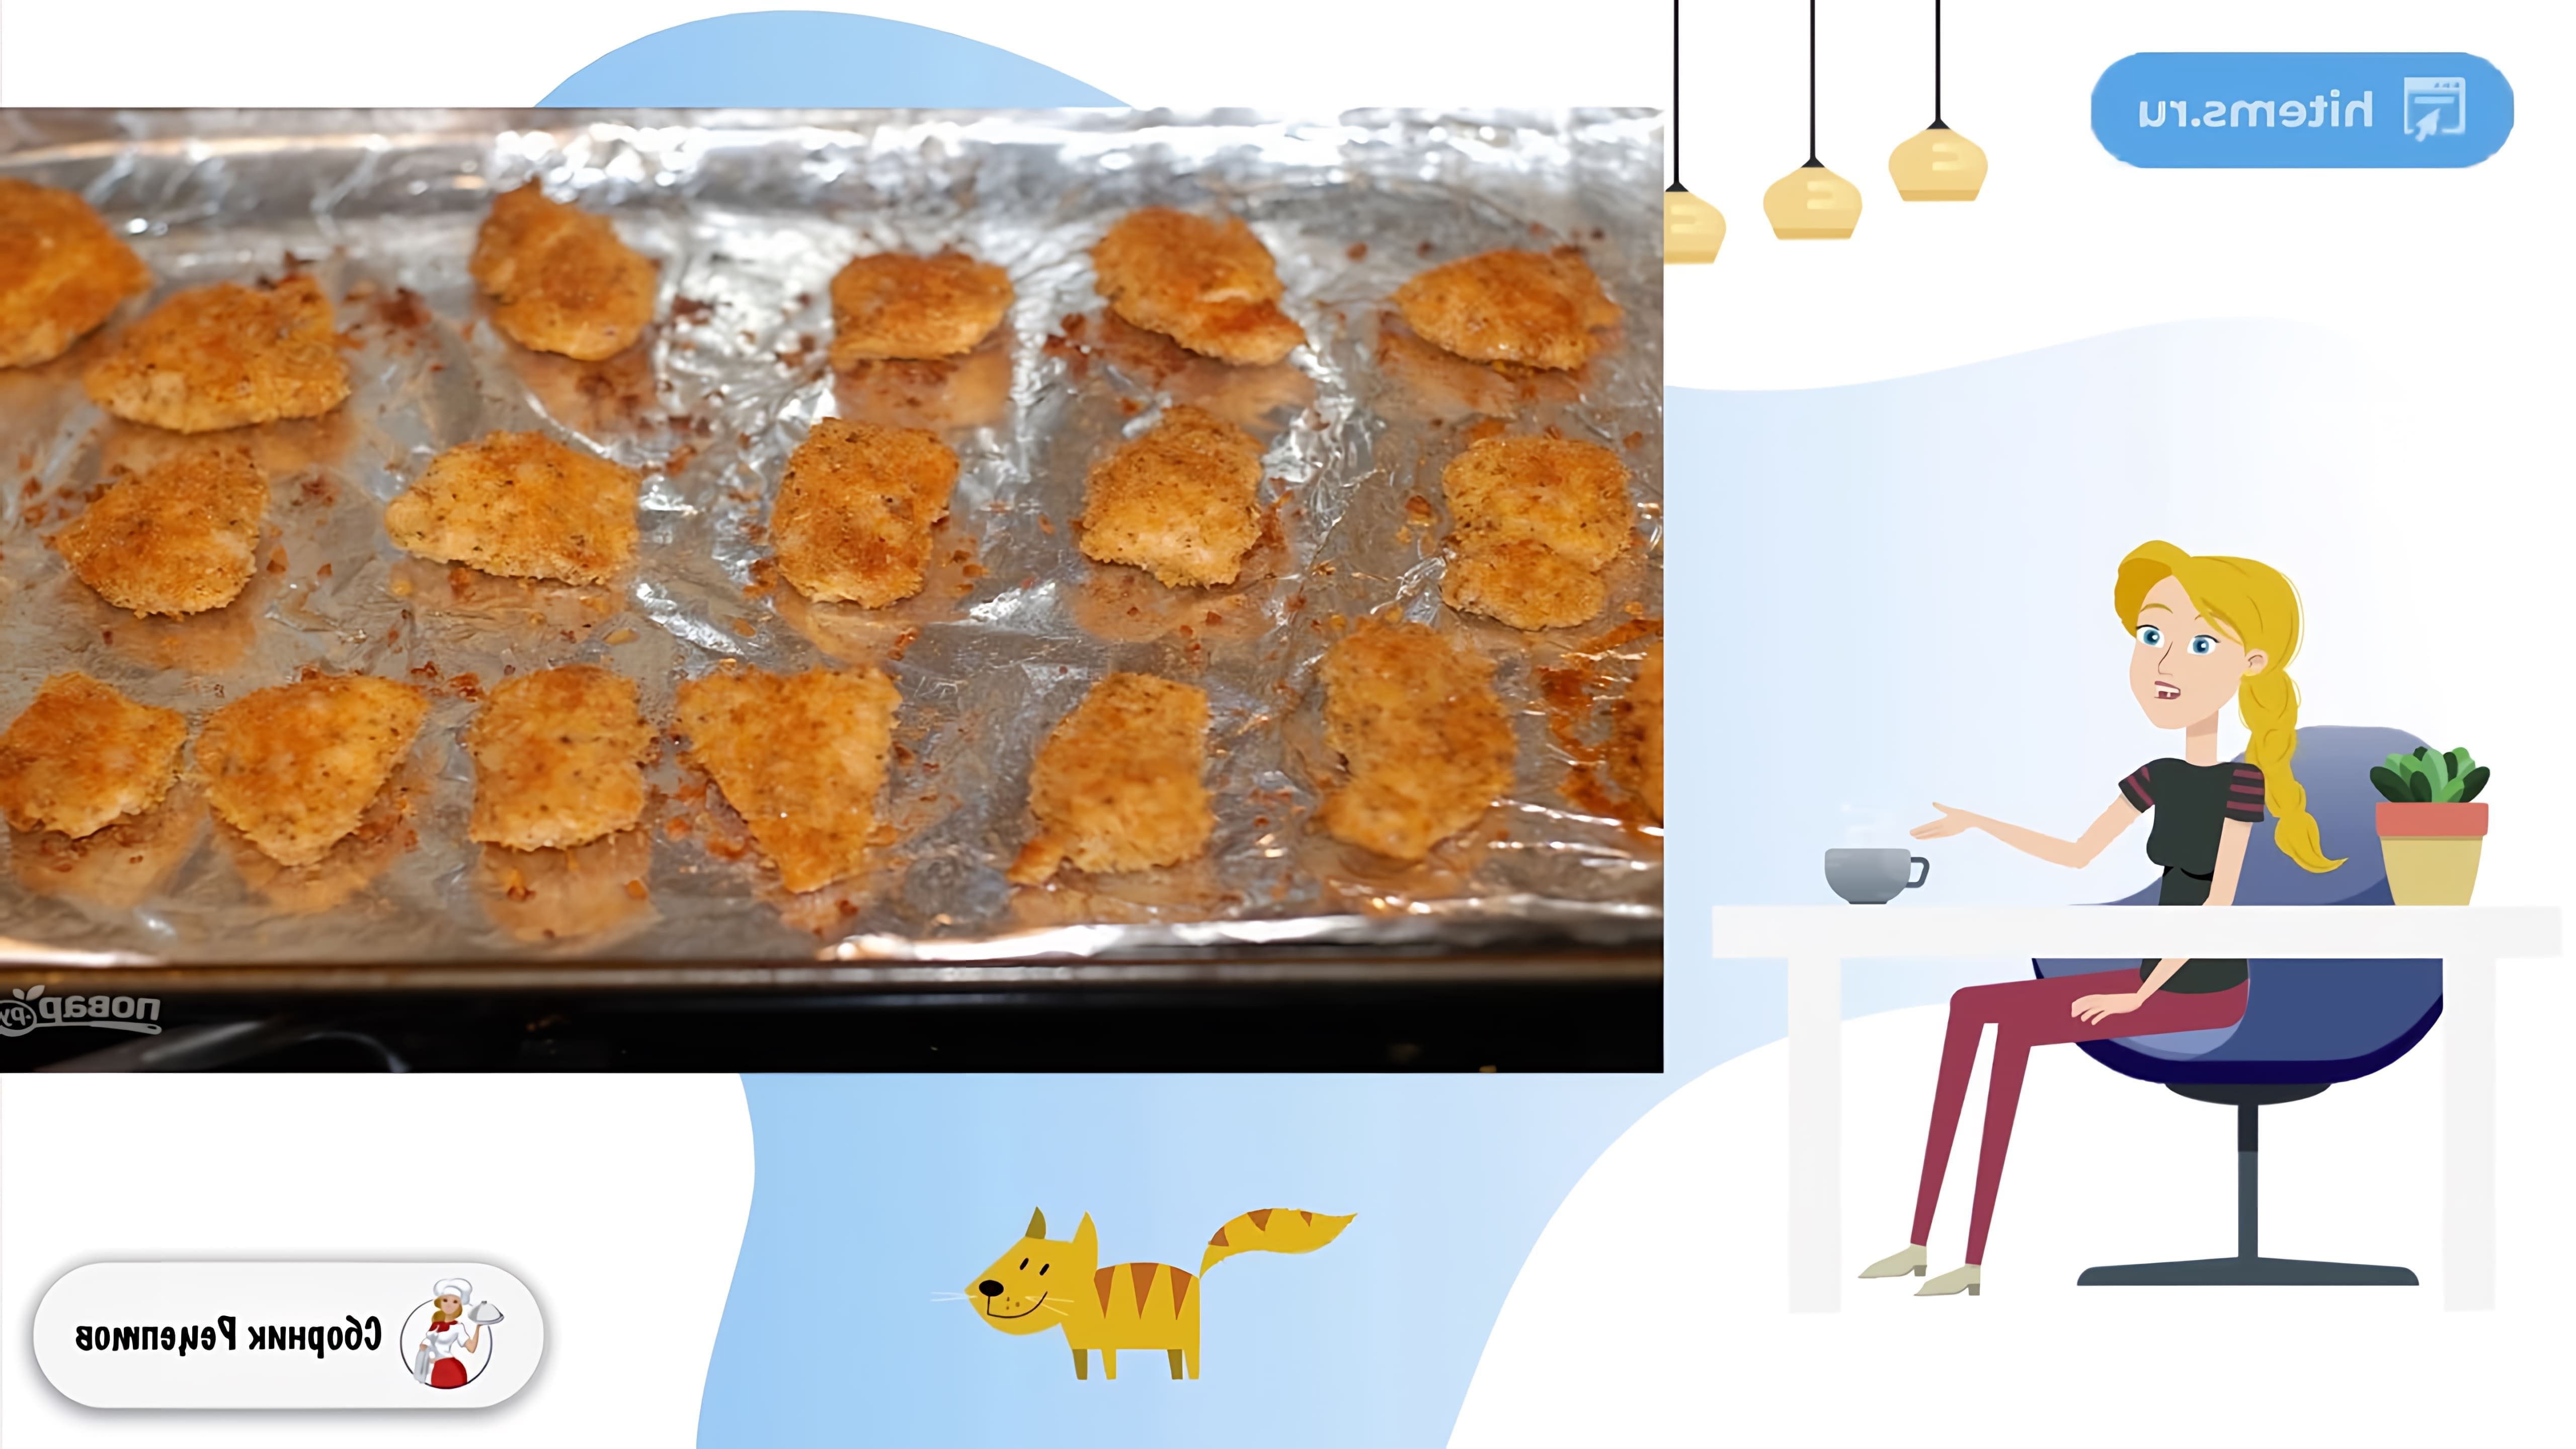 В этом видео демонстрируется рецепт приготовления детских куриных наггетсов